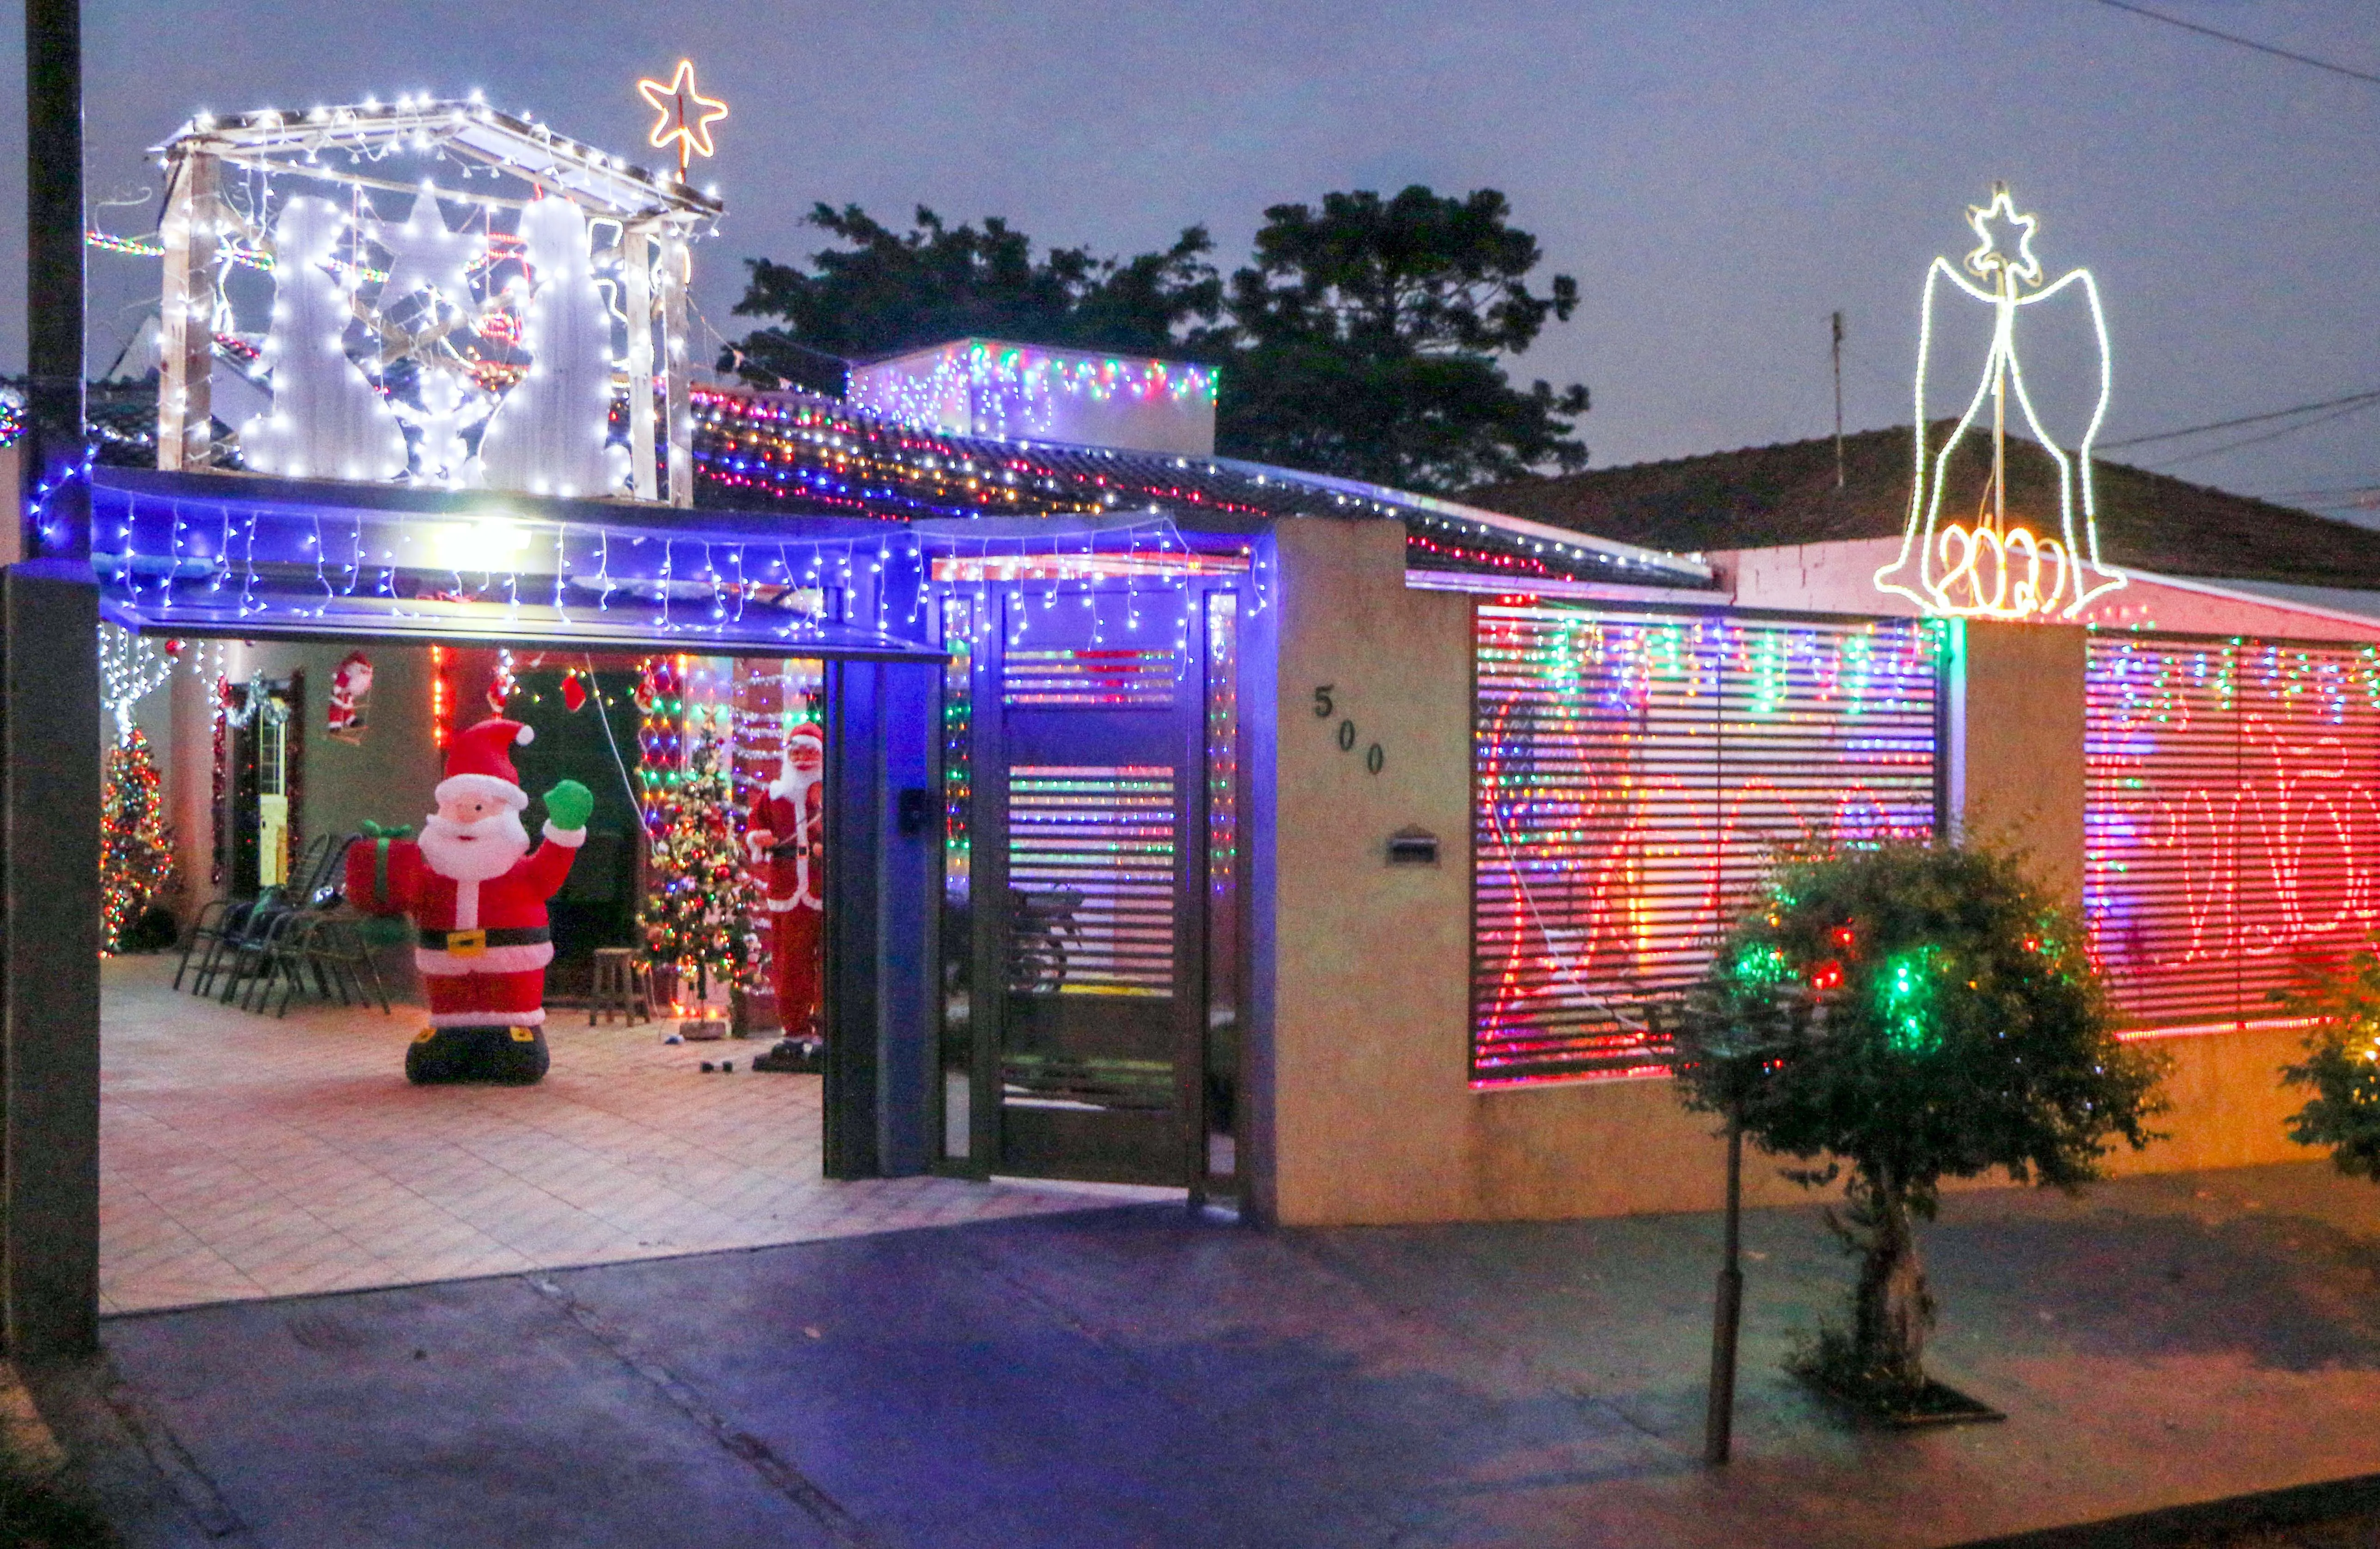 Prefeitura divulga resultado do concurso de decoração natalina